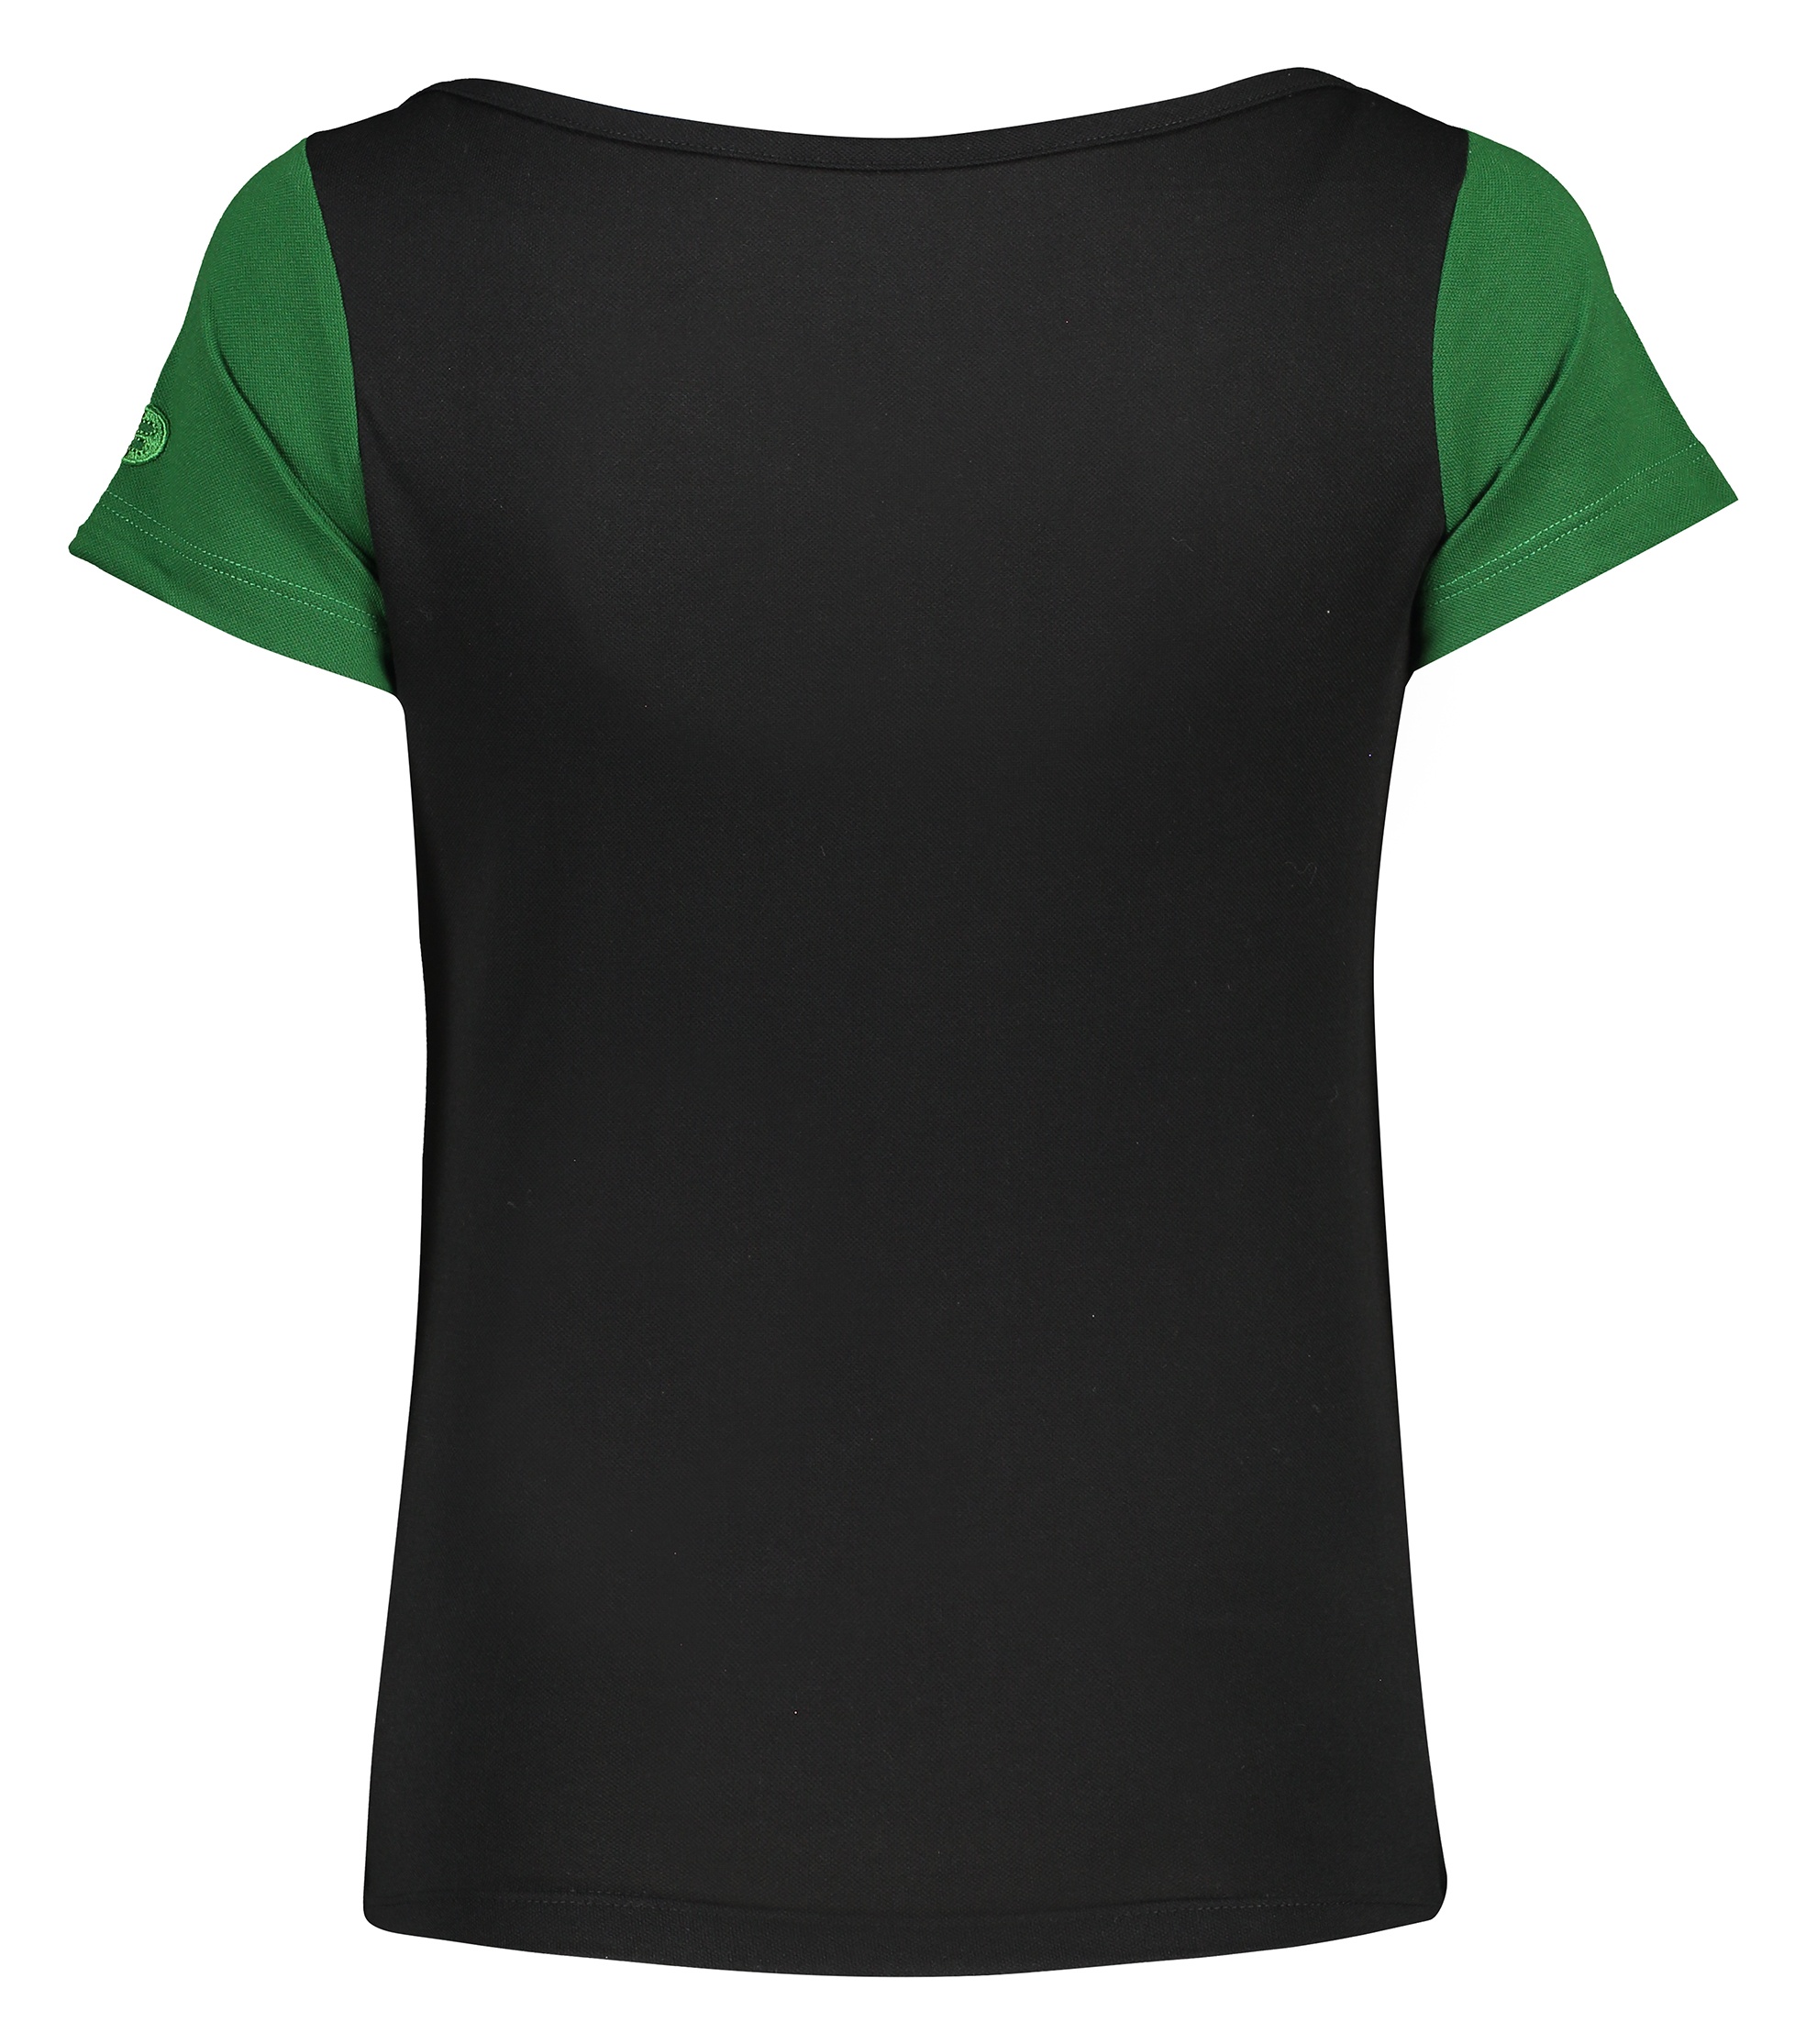 تی شرت ورزشی زنانه بی فور ران مدل 970324-9943 - مشکی سبز - 3